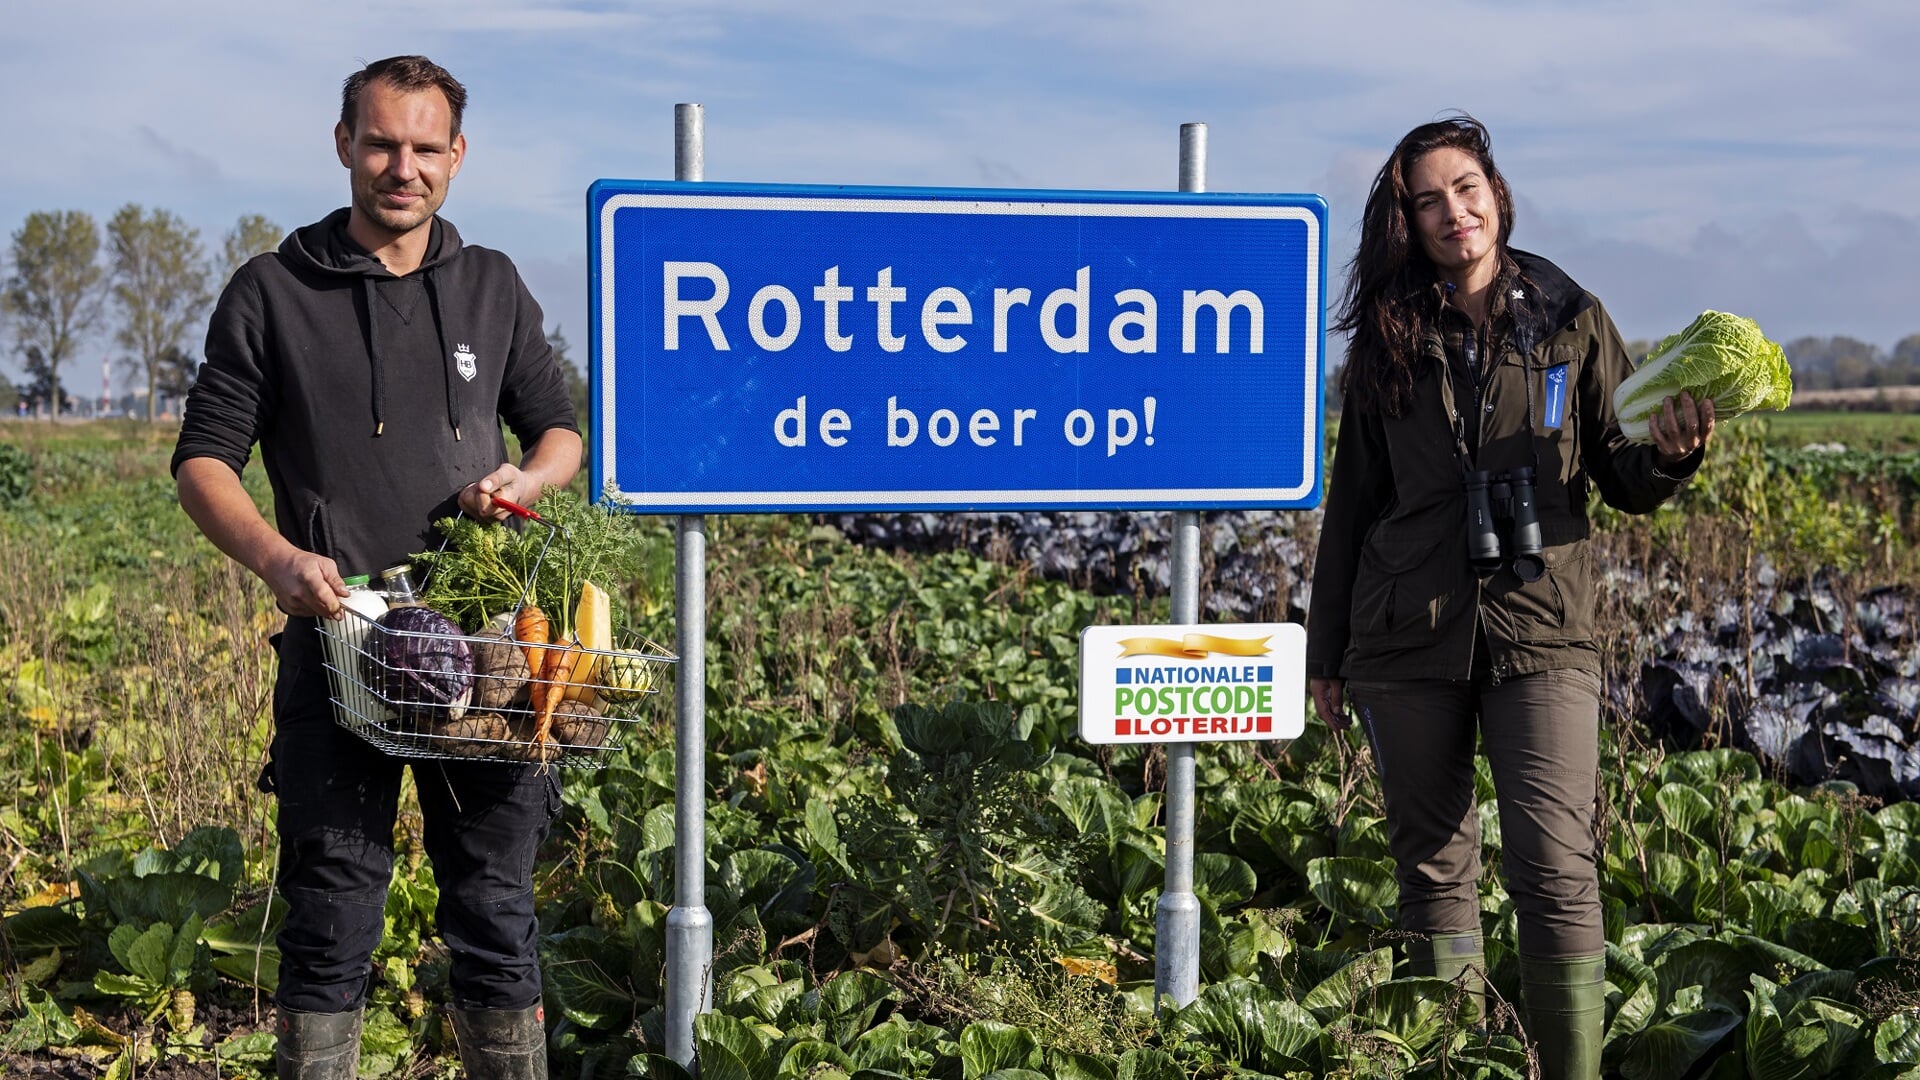 Een groot deel van de toekenning (8,8 miljoen) is vervolgfinanciering voor het project ‘Rotterdam de boer op!' (Foto: PR/Marten van Dijl)